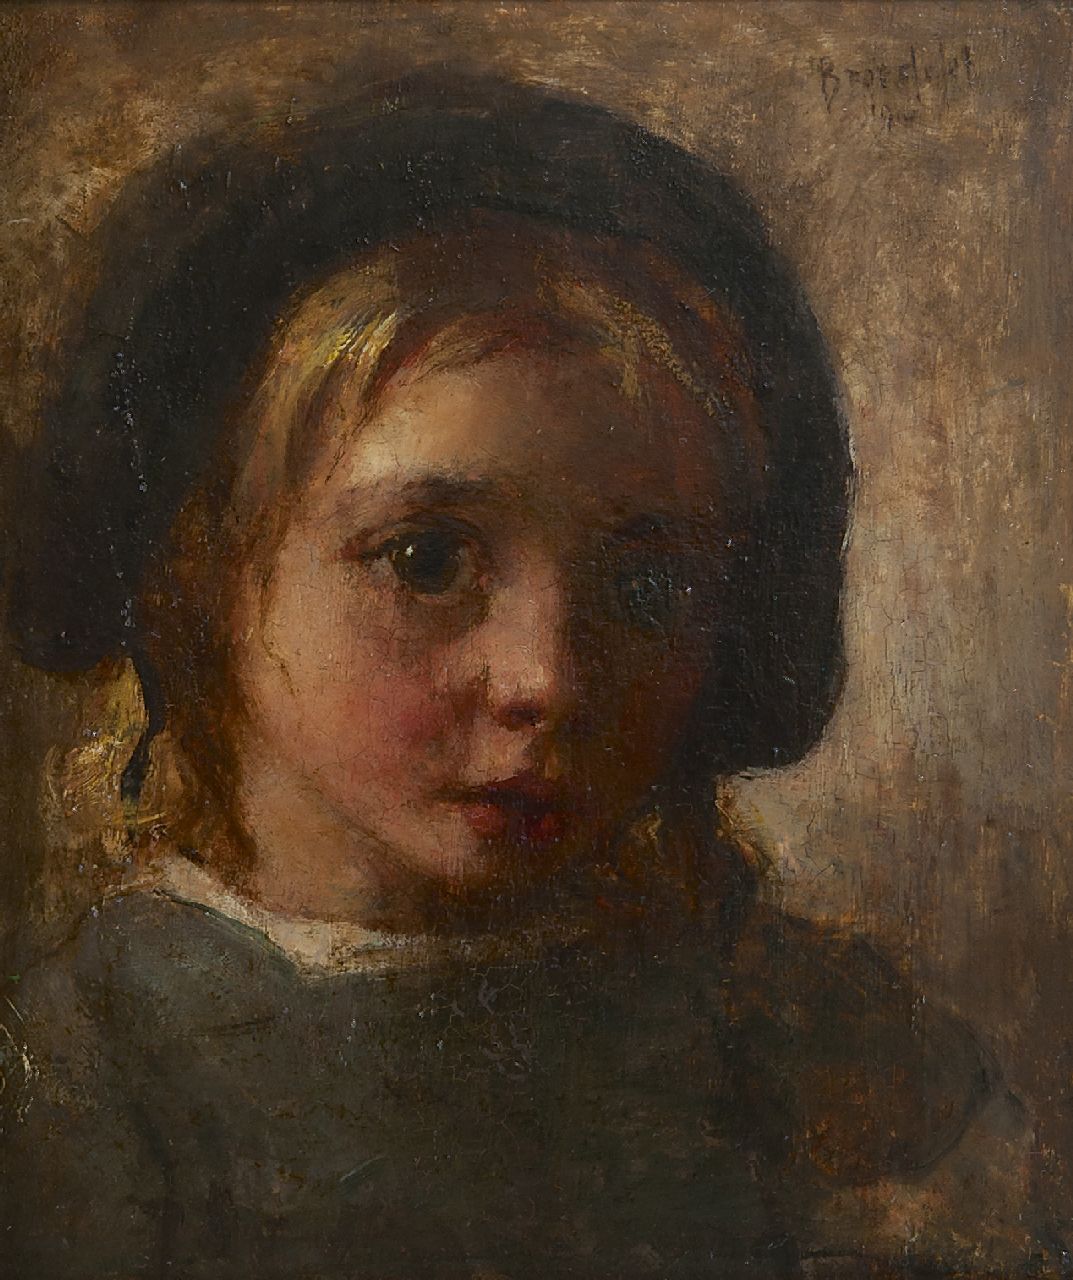 Broedelet A.V.L.  | 'André' Victor Leonard Broedelet, Kinderportret, olieverf op paneel 17,8 x 15,1 cm, gesigneerd rechtsboven en gedateerd 1910